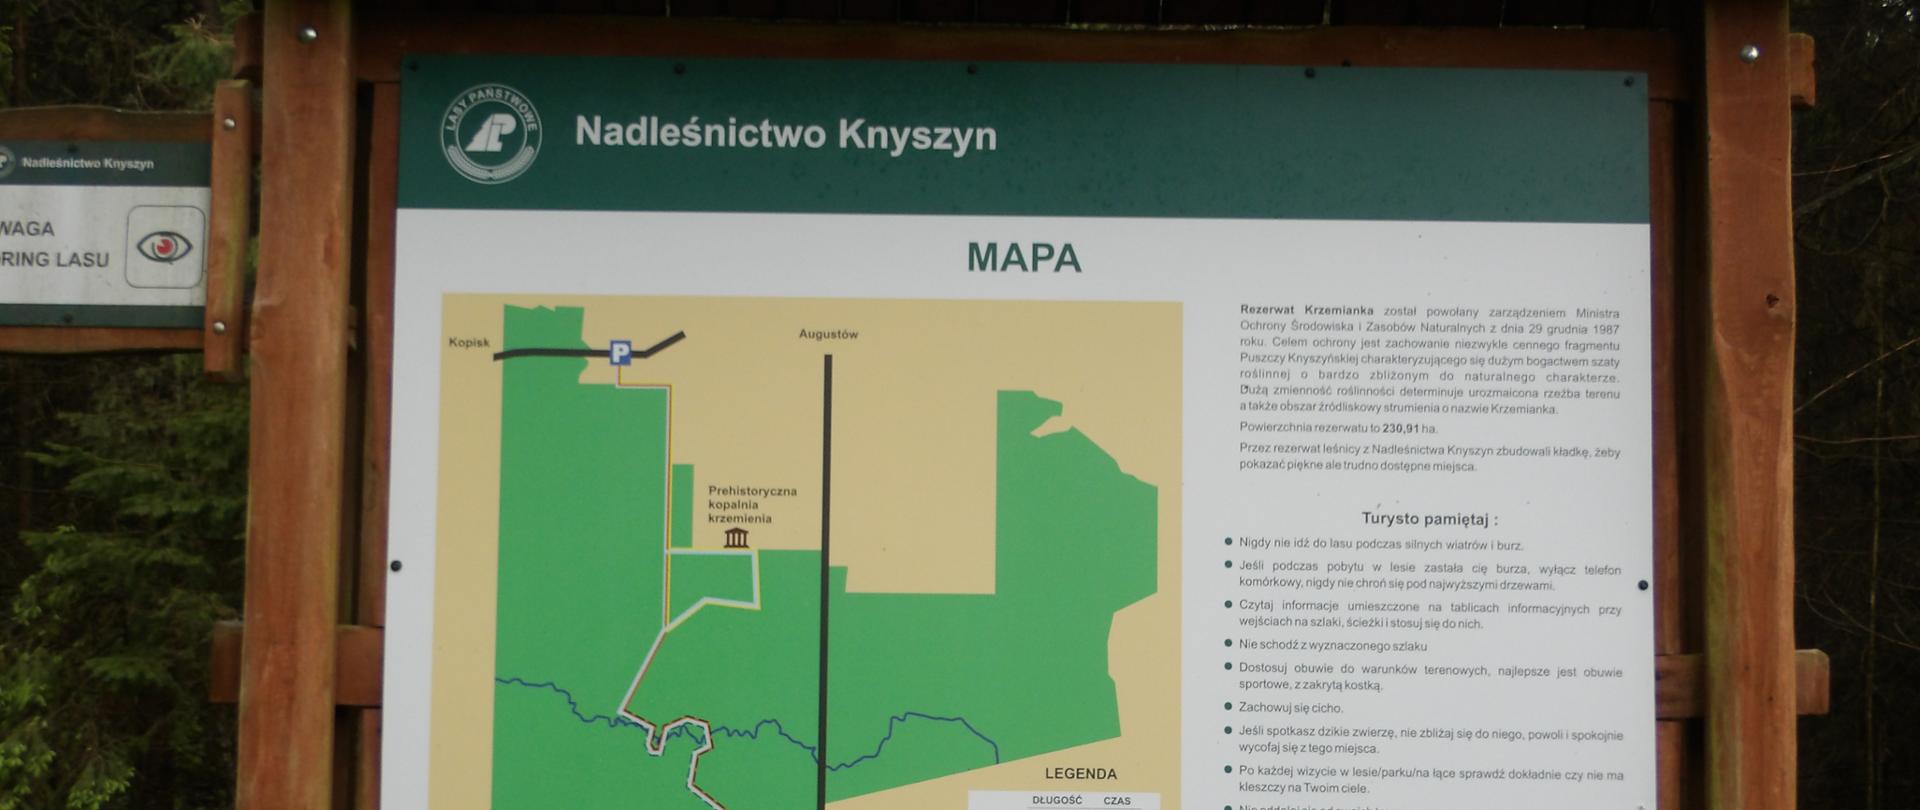 Mapa Nadleśnictwa Knyszyn